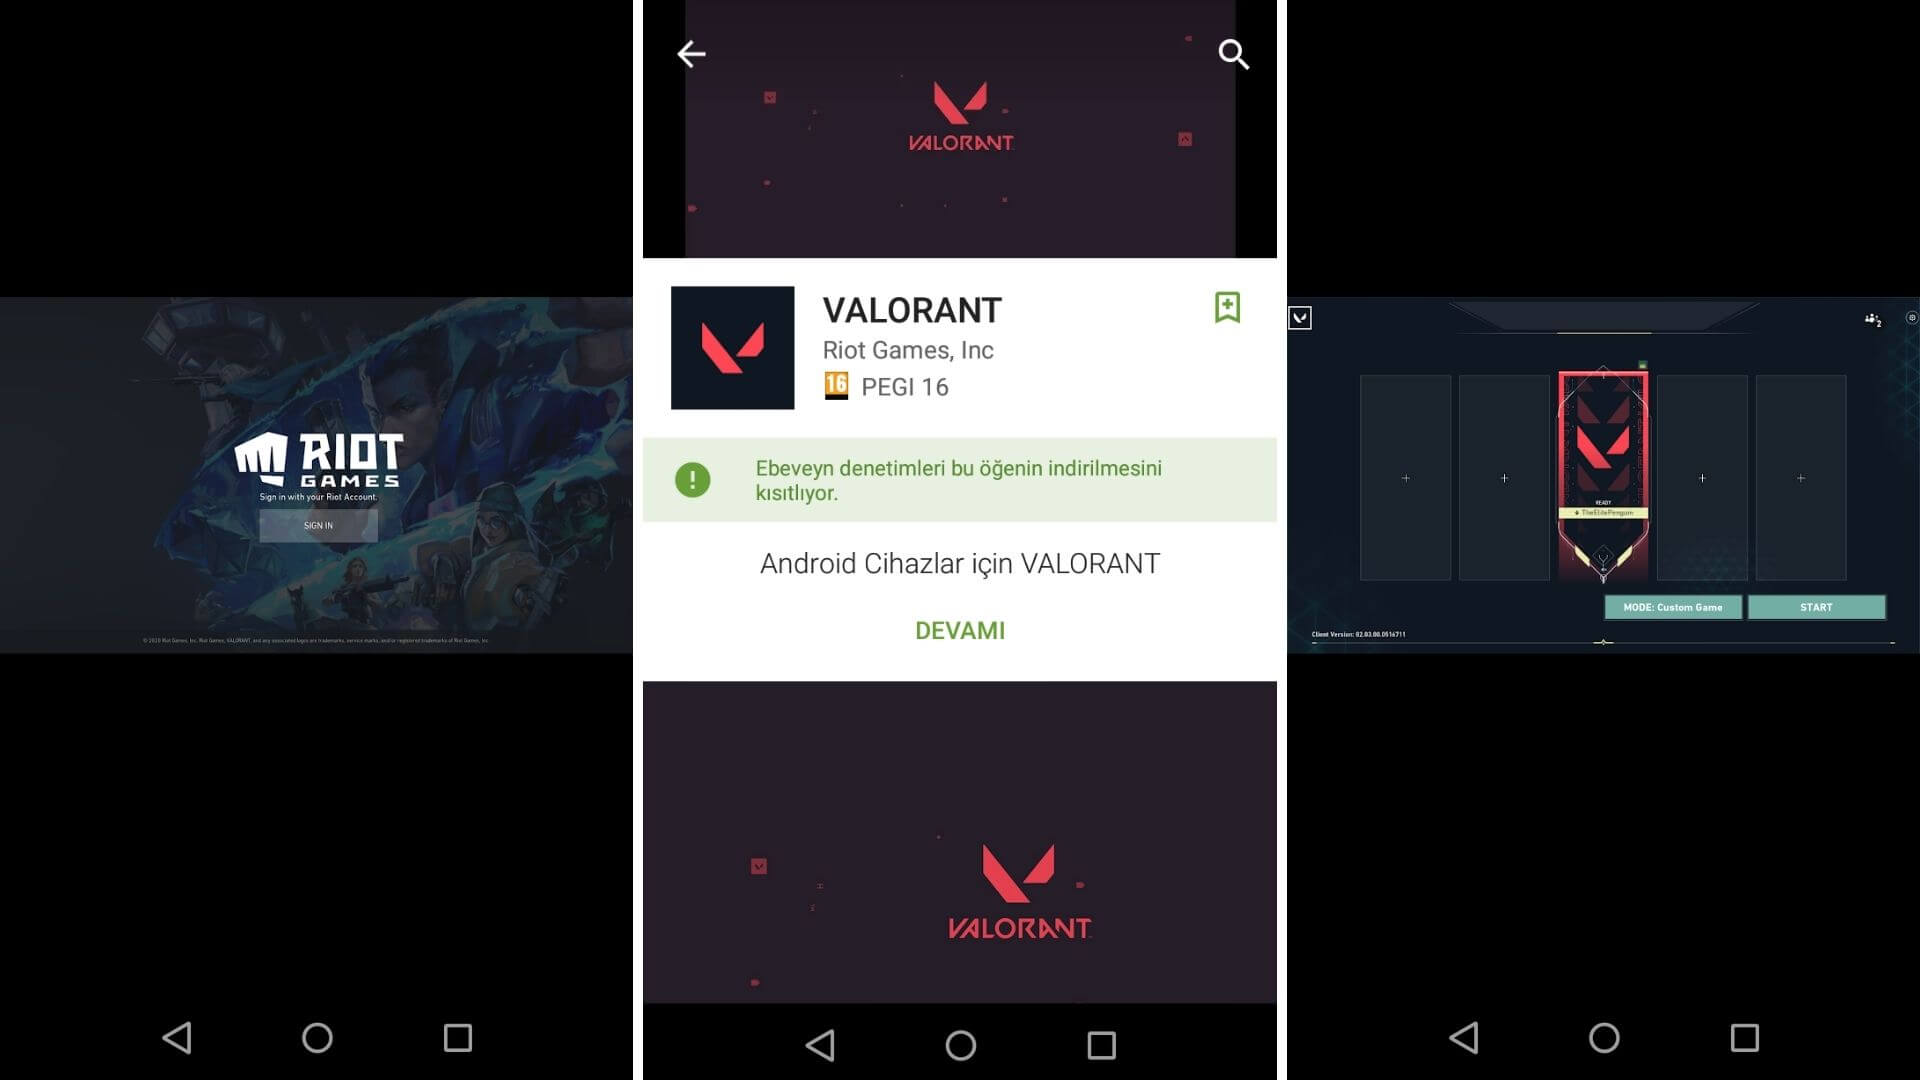 VALORANT Mobile Android Google Play Store sayfasına nasıl ulaşılır?